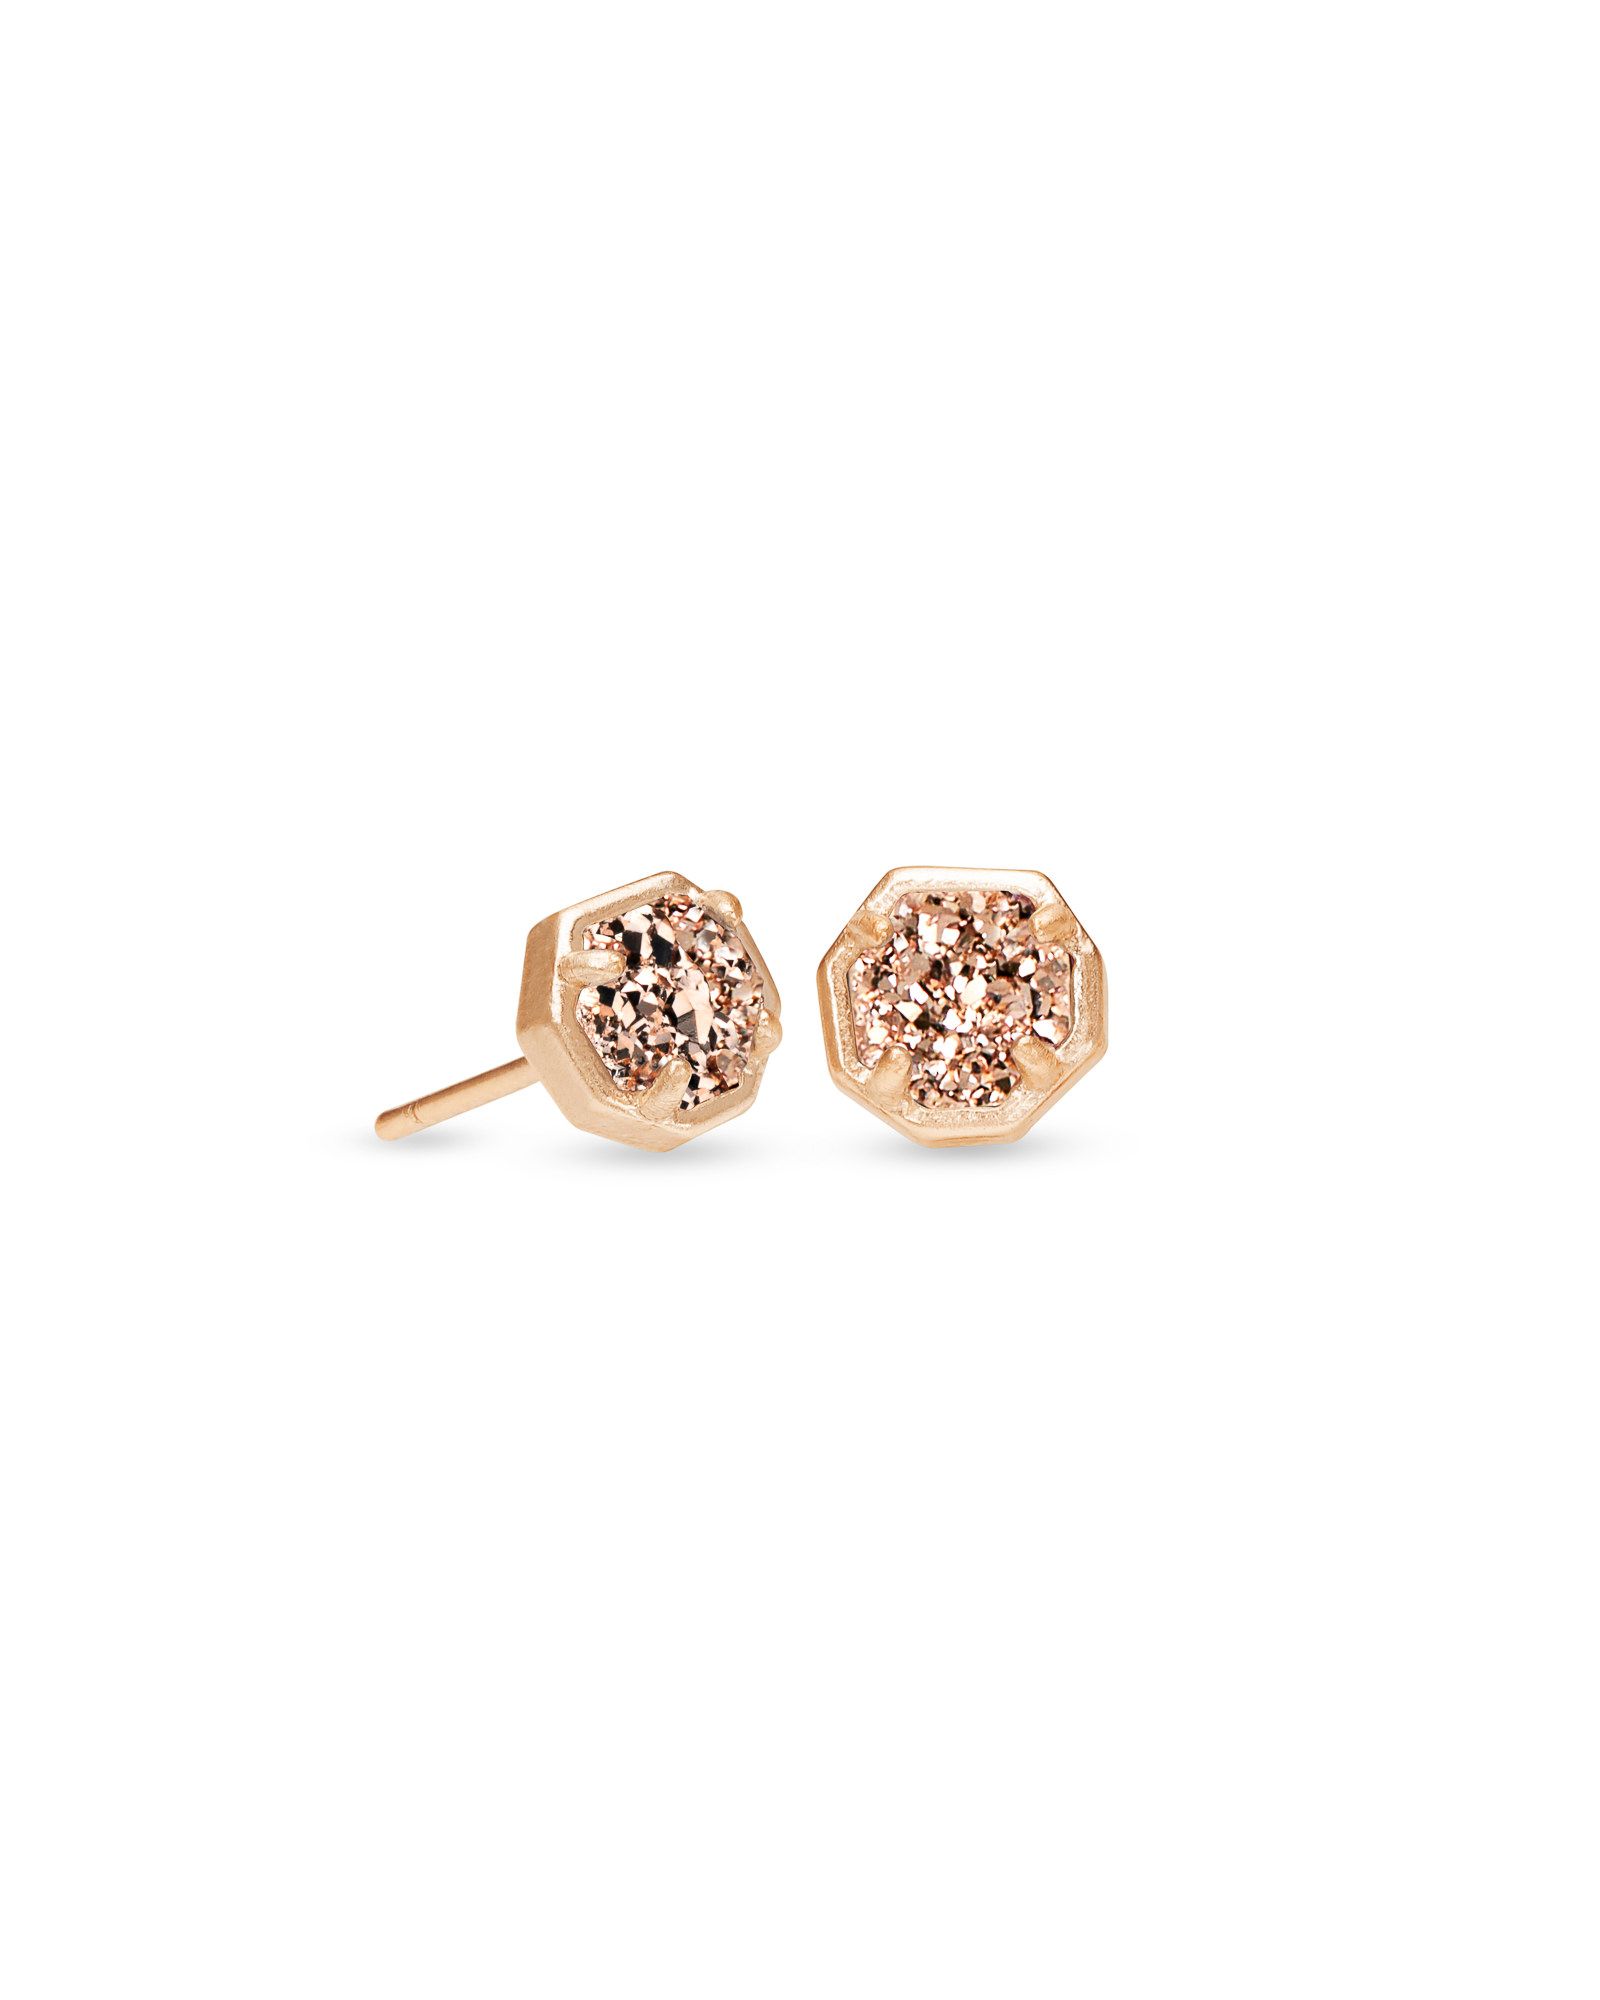 Nola Rose Gold Stud Earrings in Rose Gold Drusy | Kendra Scott | Kendra Scott